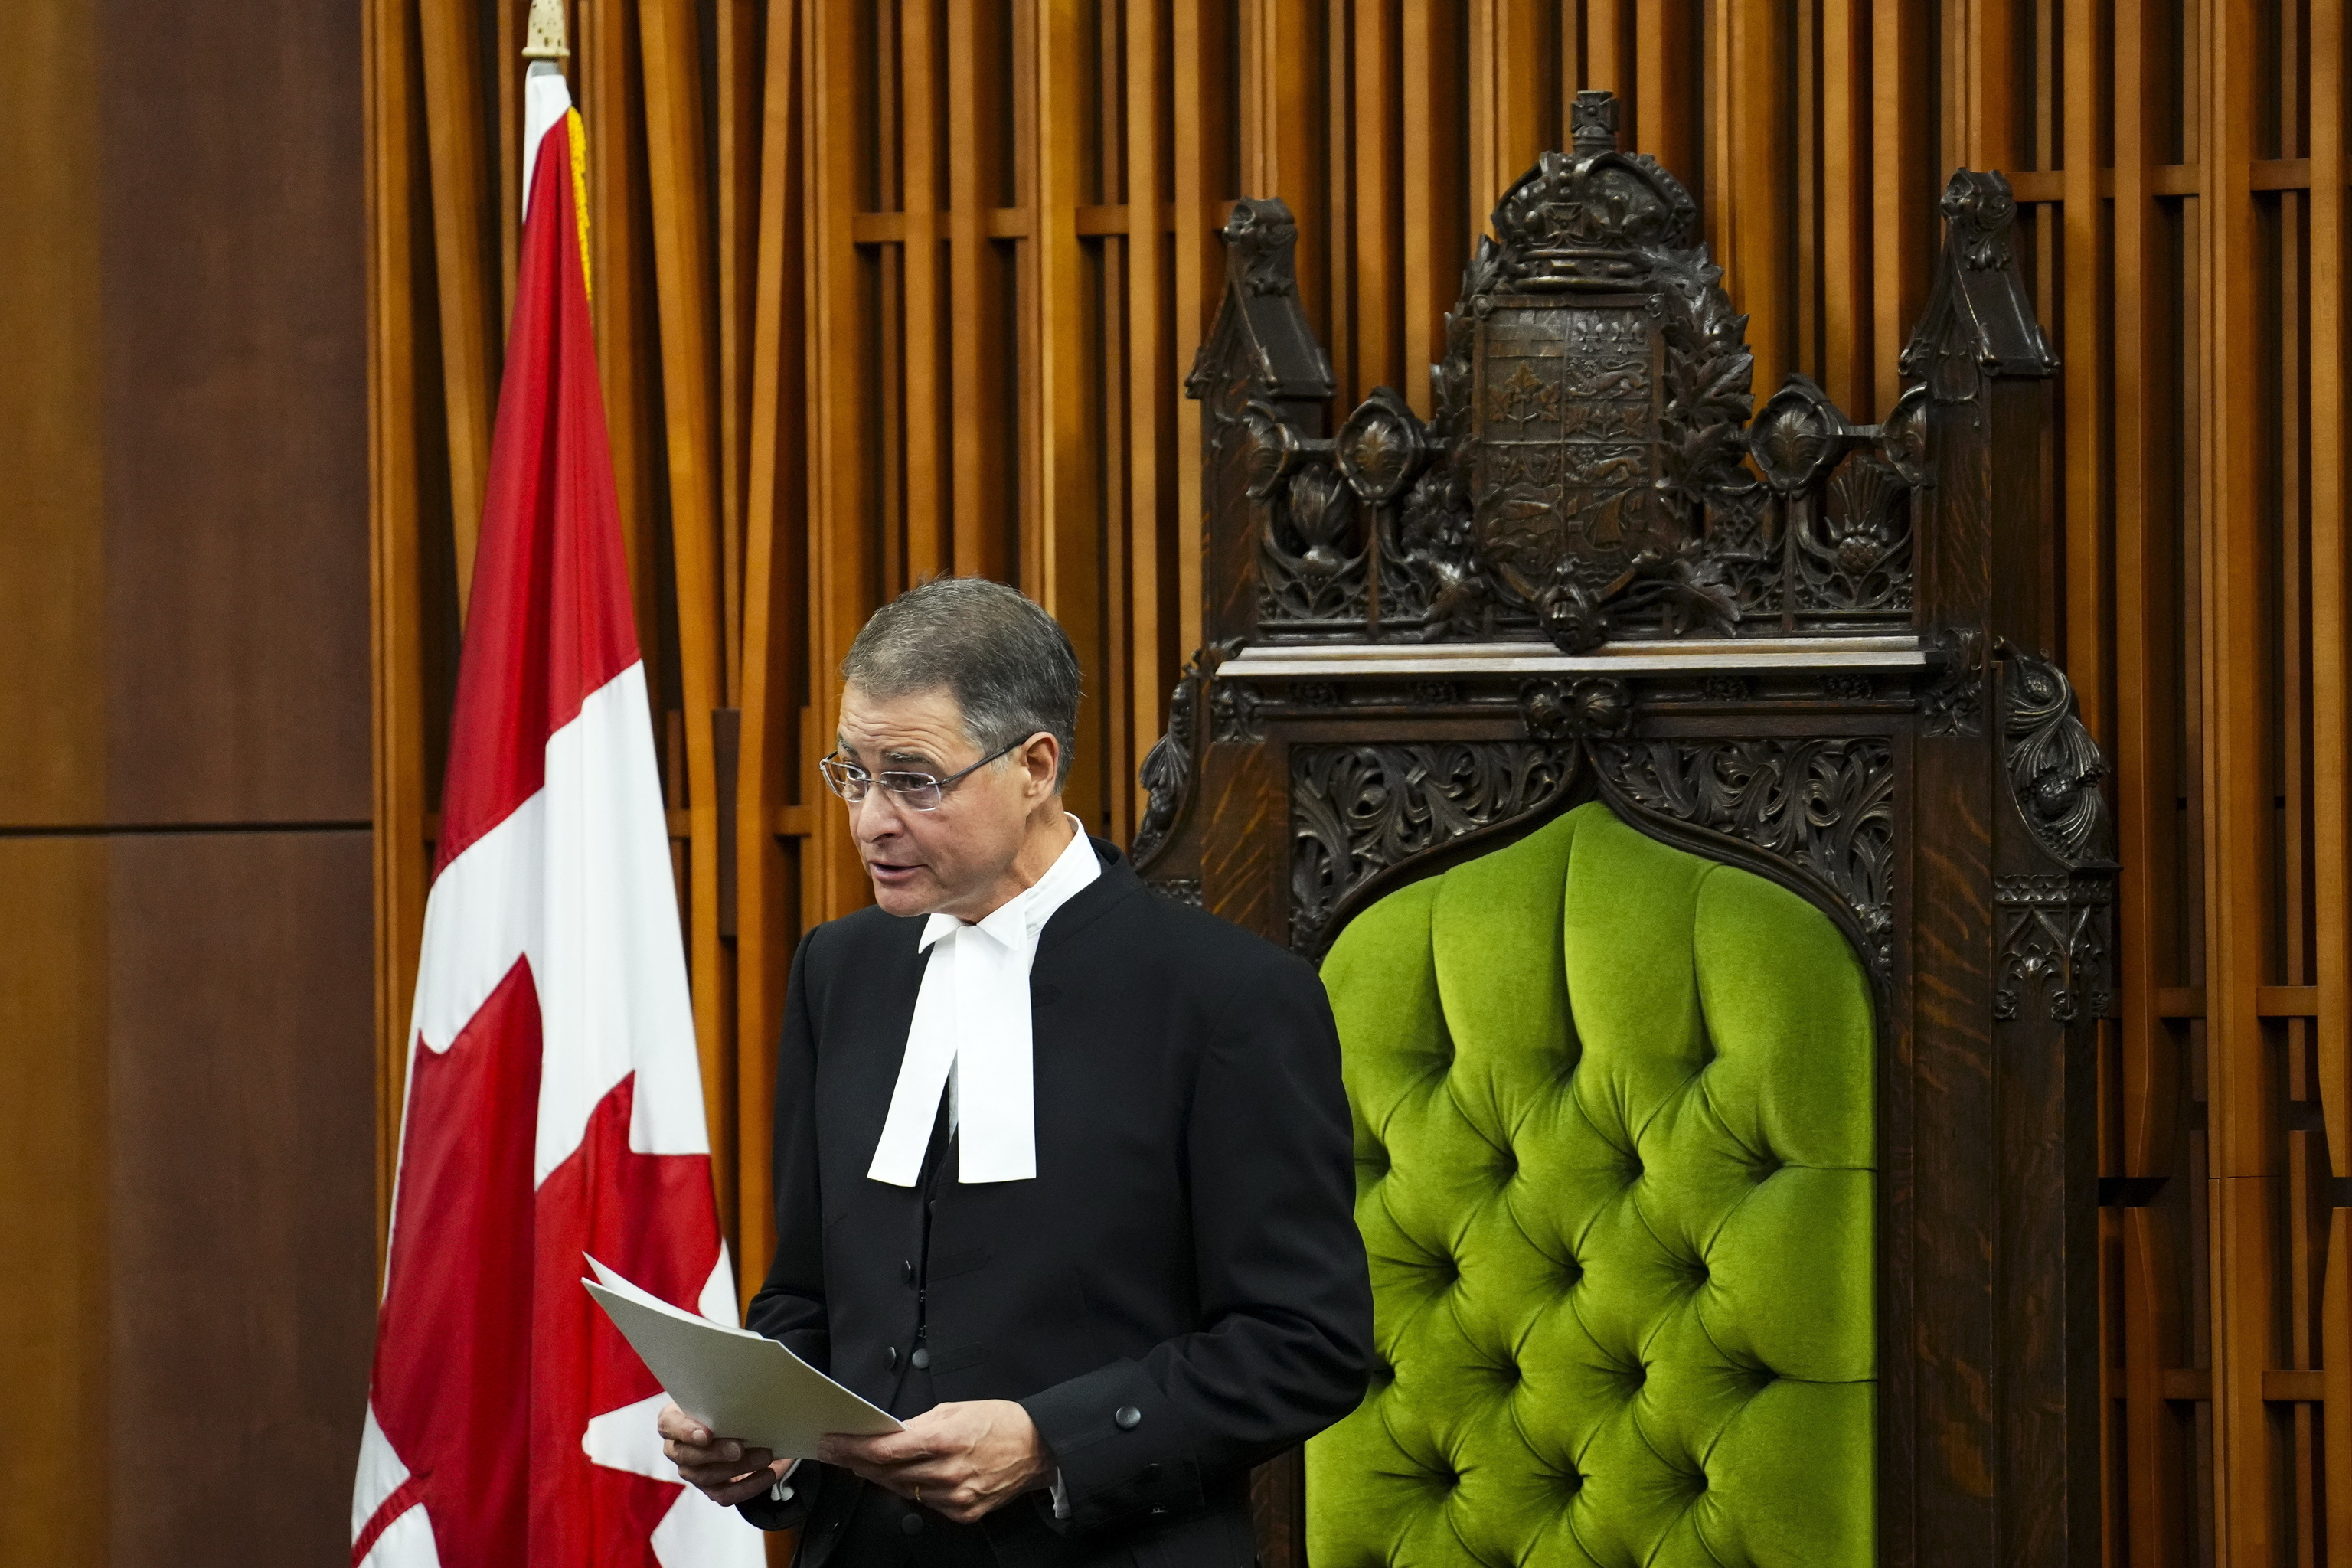 El líder de Parlamento canadiense dimite por el homenaje a un ex nazi durante visita de Zelenski